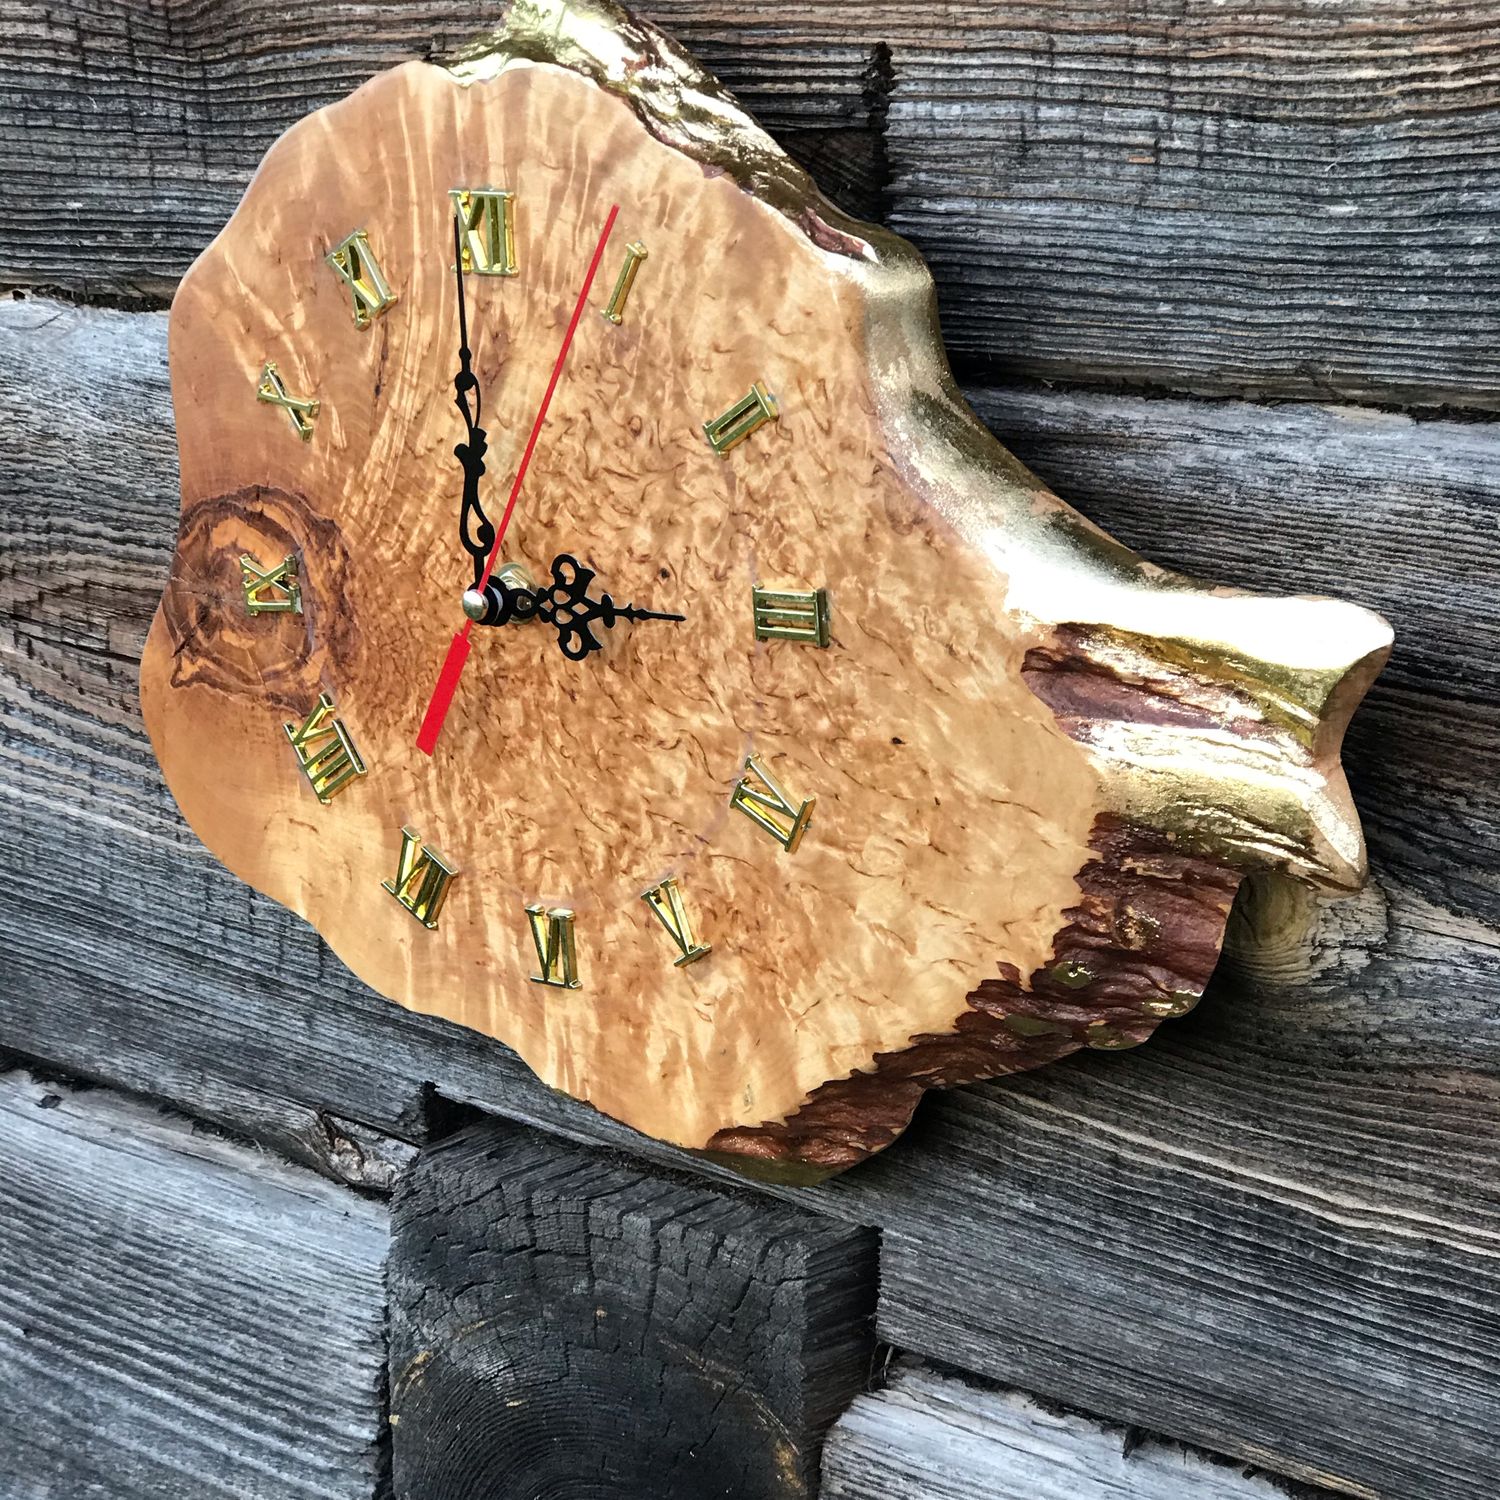 Часы на спиле дерева своими руками